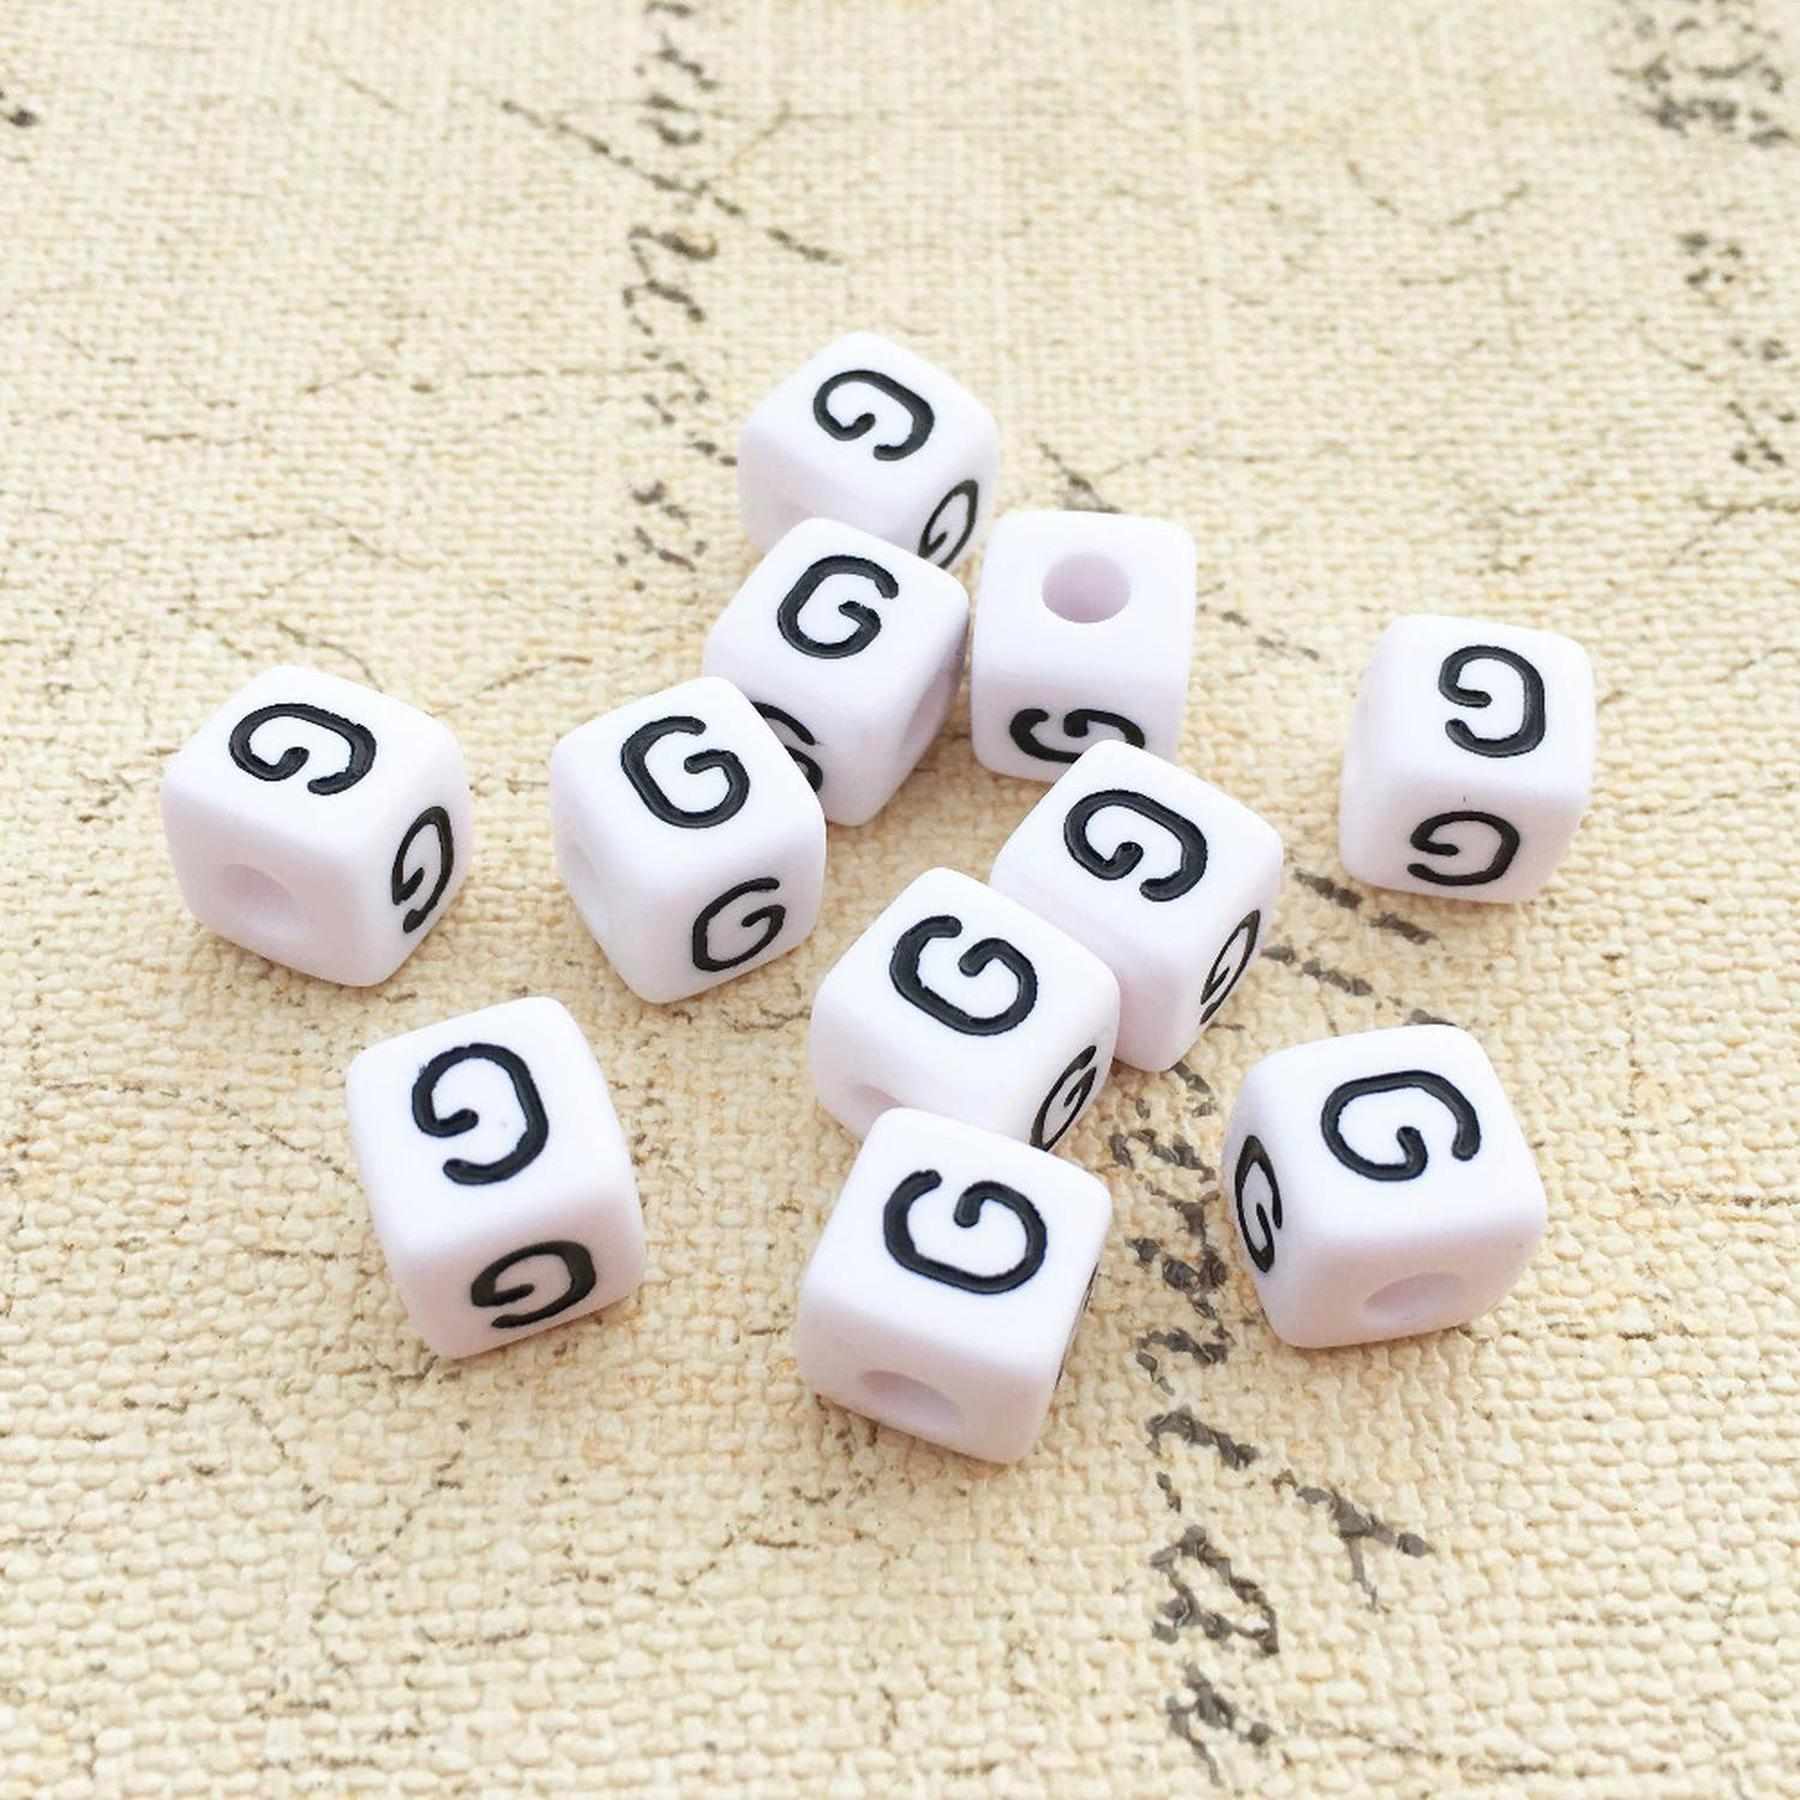 Buchstaben Perlen, 30 Stück, 6x6 mm, weiß mit schwarz, eckig, Buchstabe G